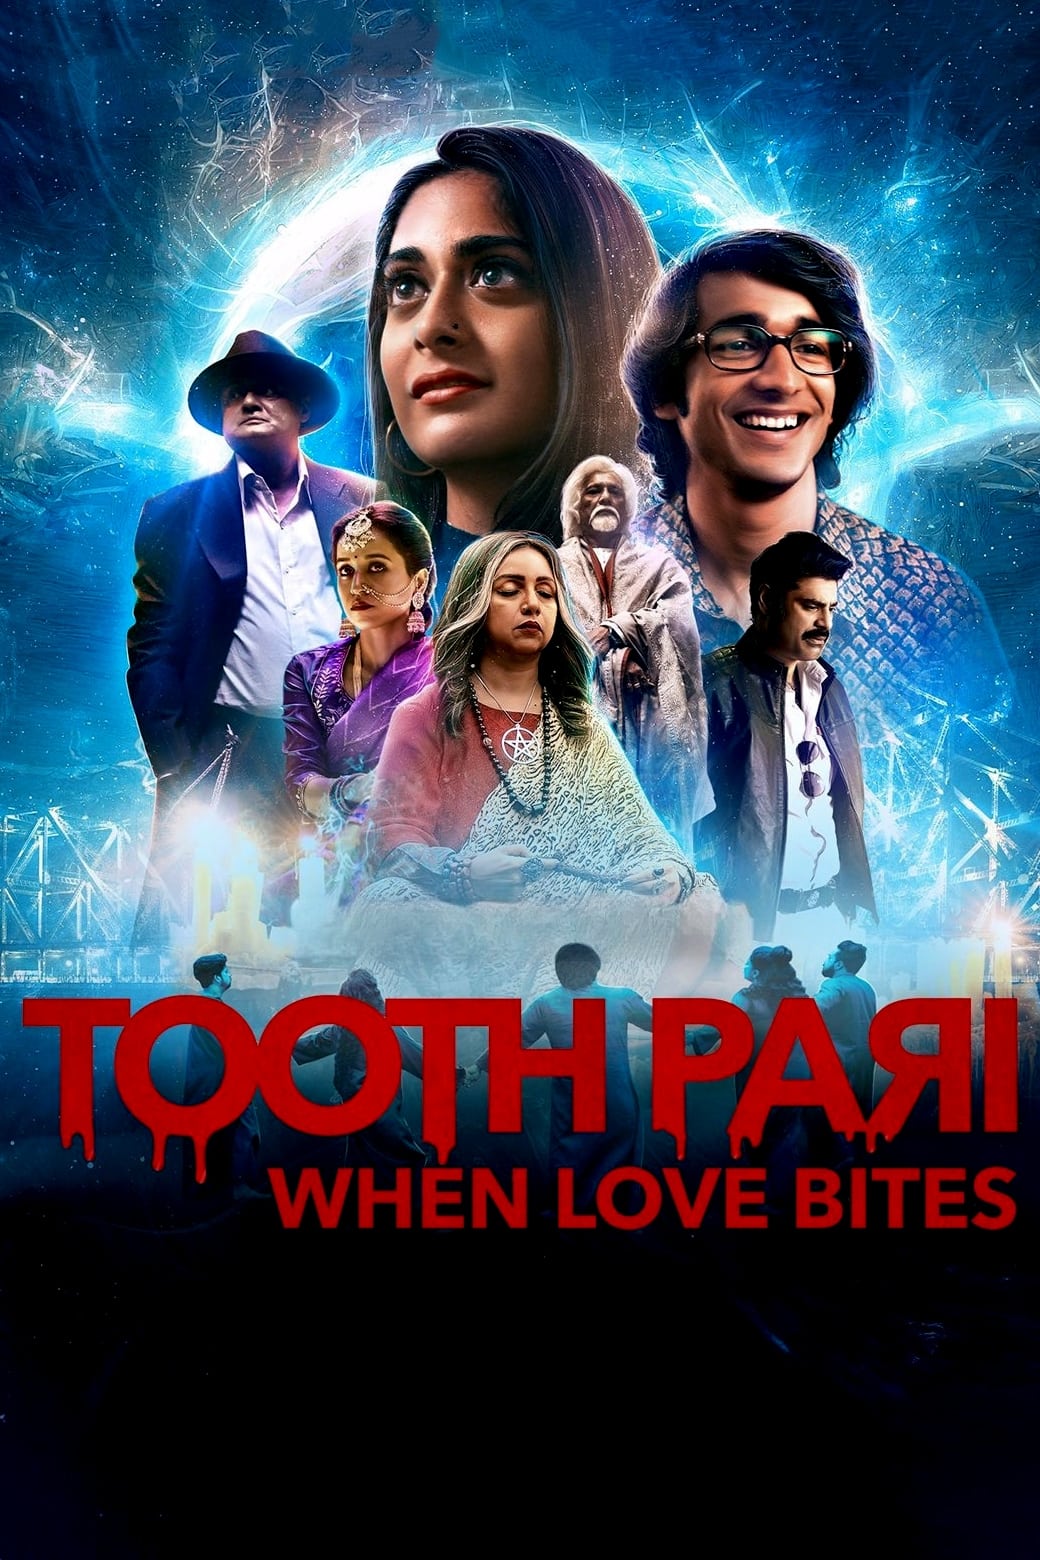 فرشته دندون: وقتی عشق گاز میگیرد (Tooth Pari: When Love Bites)